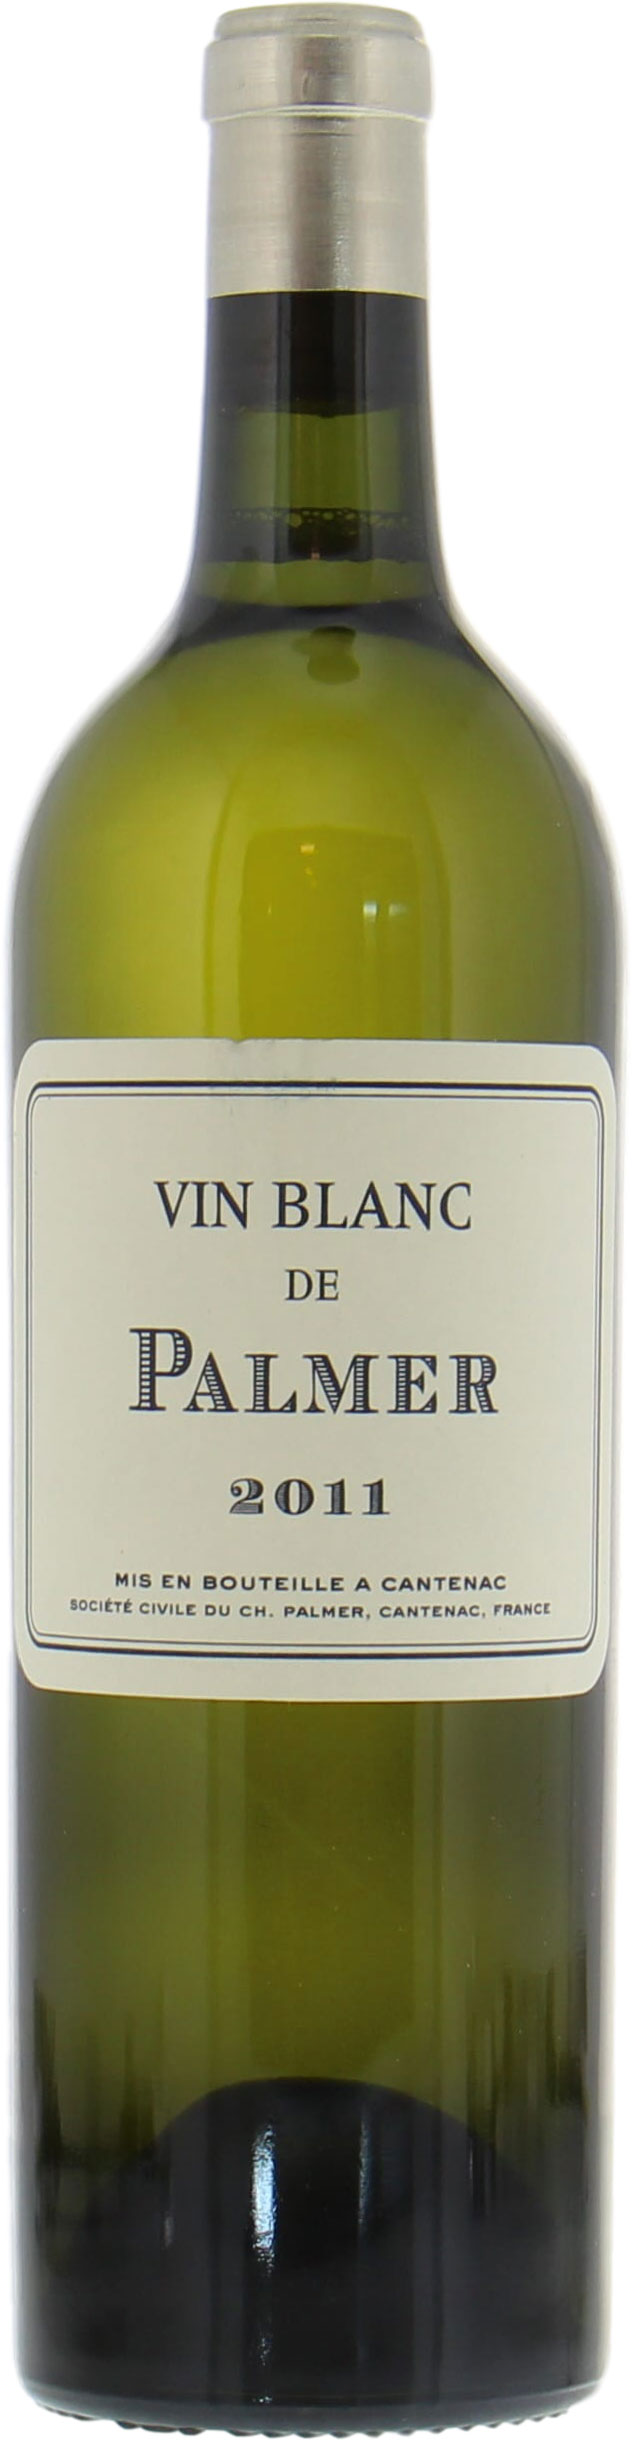 Chateau Palmer - Vin Blanc de Palmer 2011 Perfect